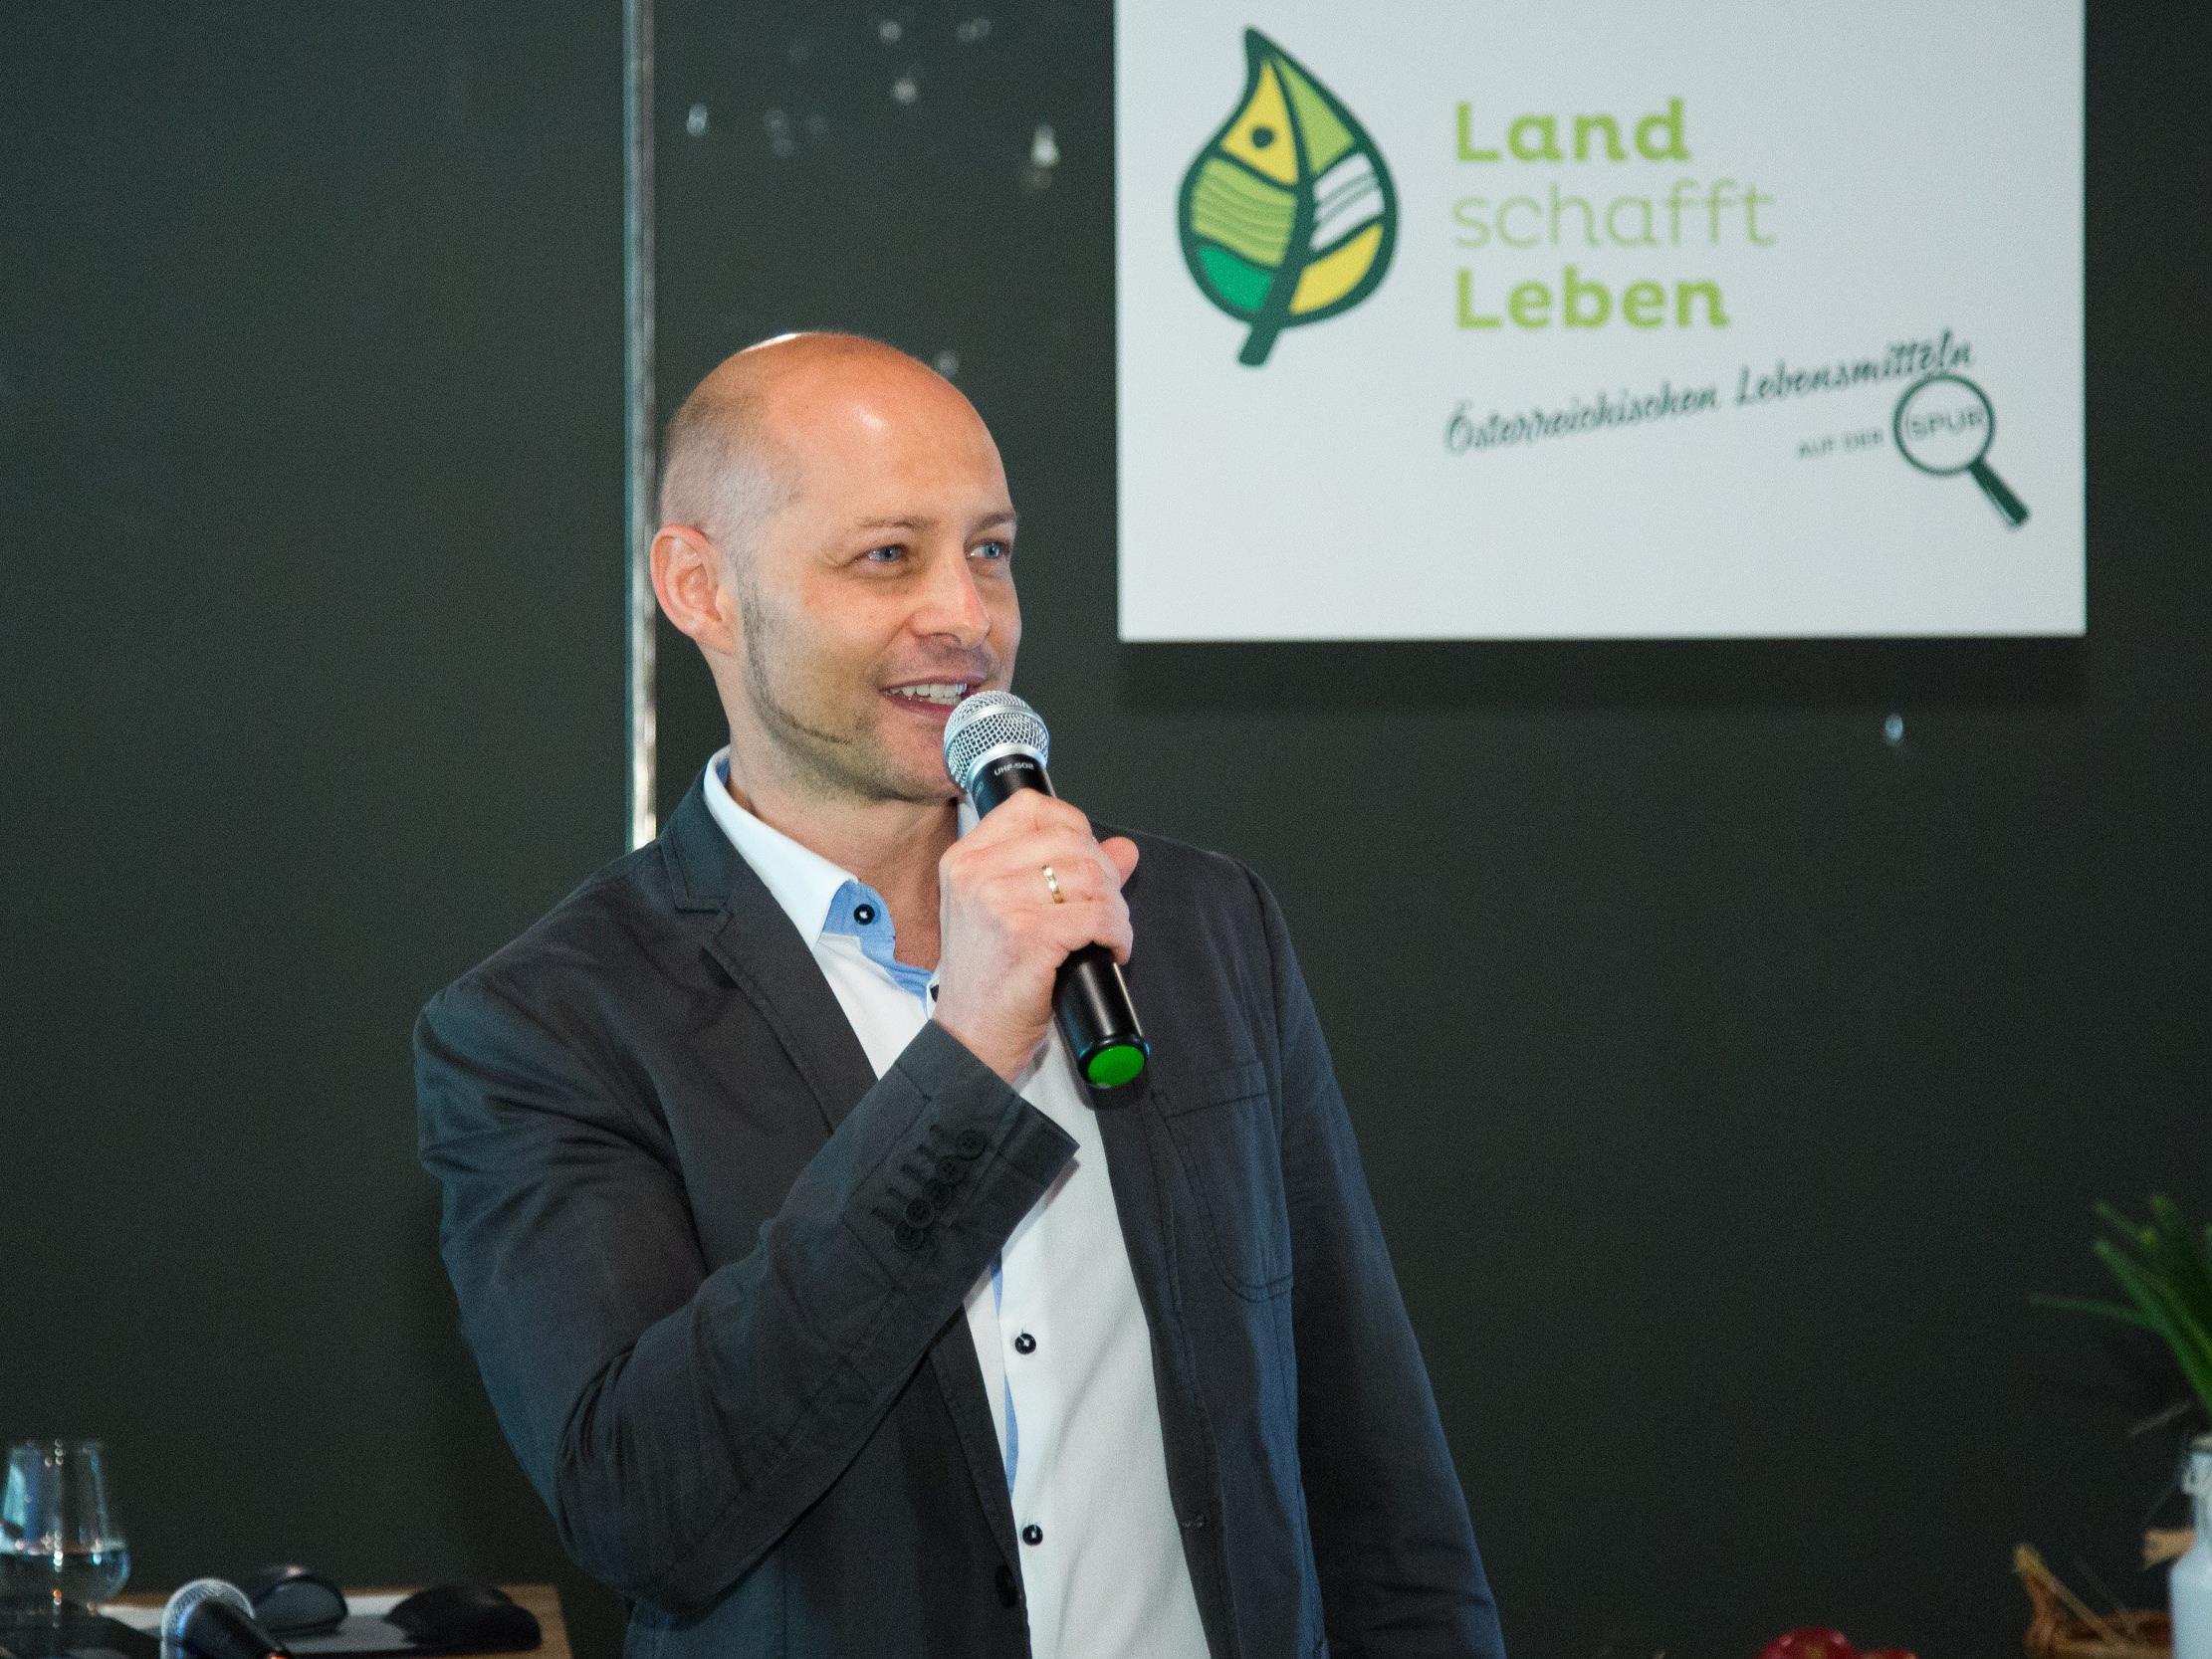 Gesprächspartner & Gründer von Land schafft Leben Hannes Royer bei der ersten Pressekonferenz